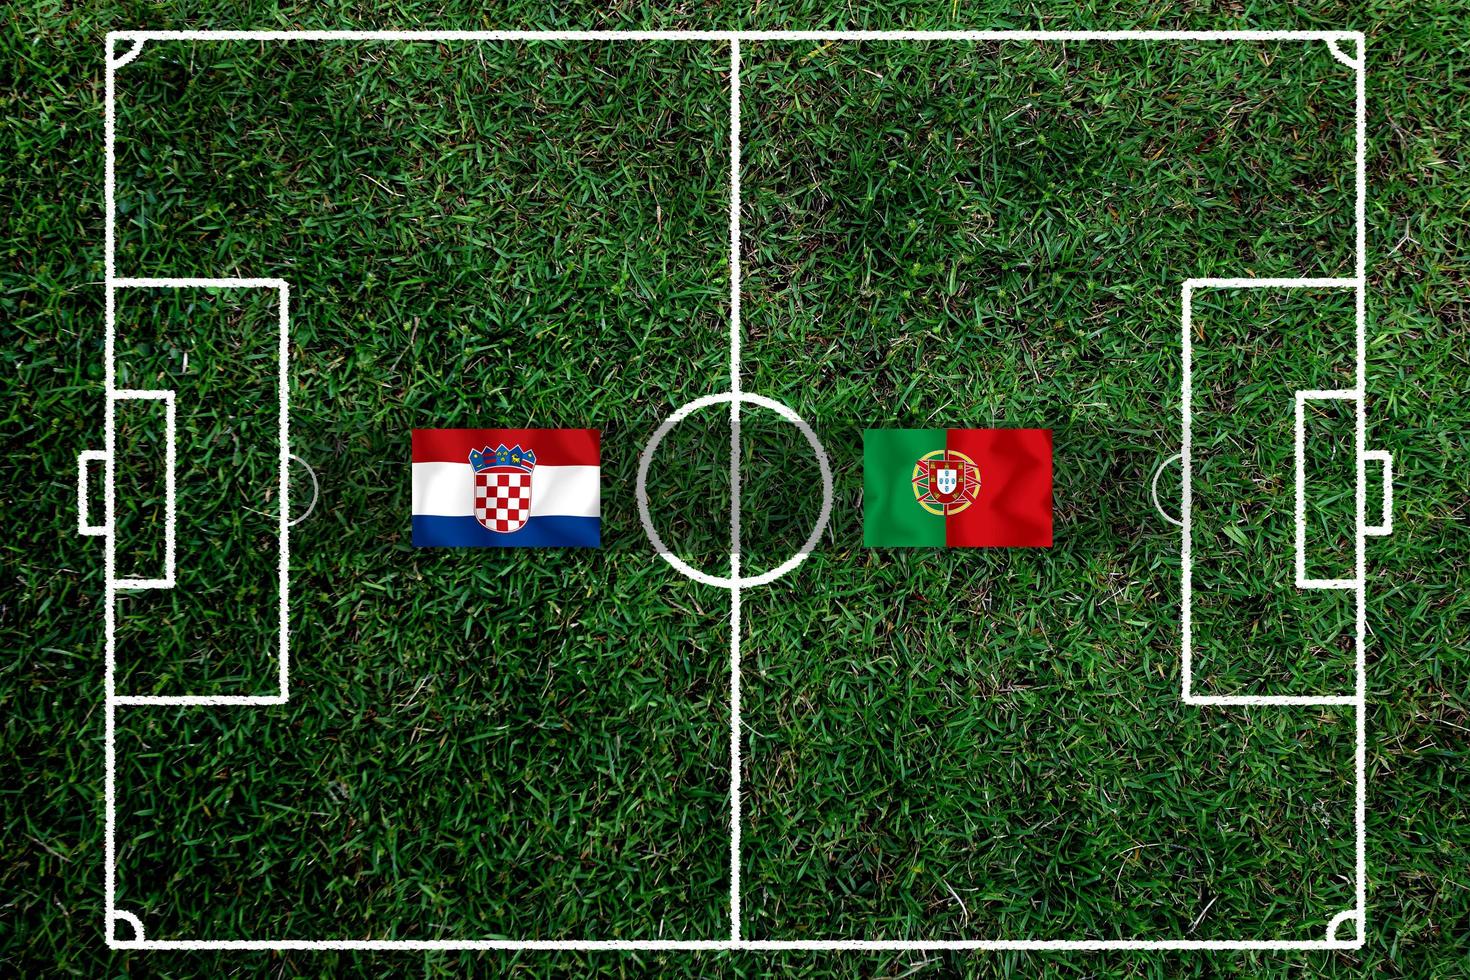 competição da taça de futebol entre a croácia nacional e a nacional portuguesa. foto